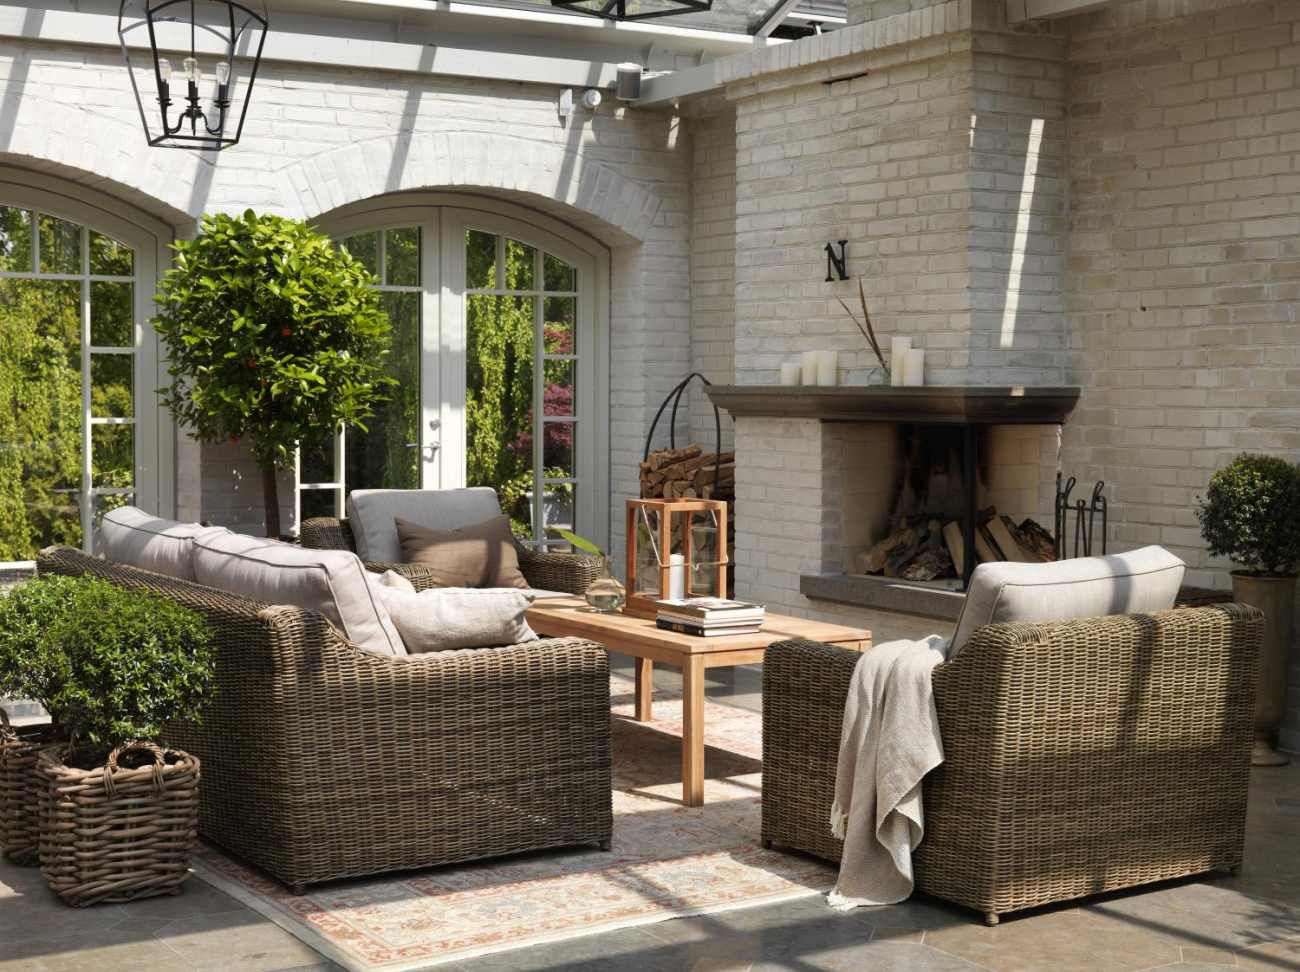 Das Gartensofa Glendon überzeugt mit seinem modernen Design. Gefertigt wurde er aus Rattan, welches einen braunen Farbton besitzt. Das Gestell ist auch aus Rattan und hat eine braune Farbe. Die Sitzhöhe des Sofas beträgt 42 cm.